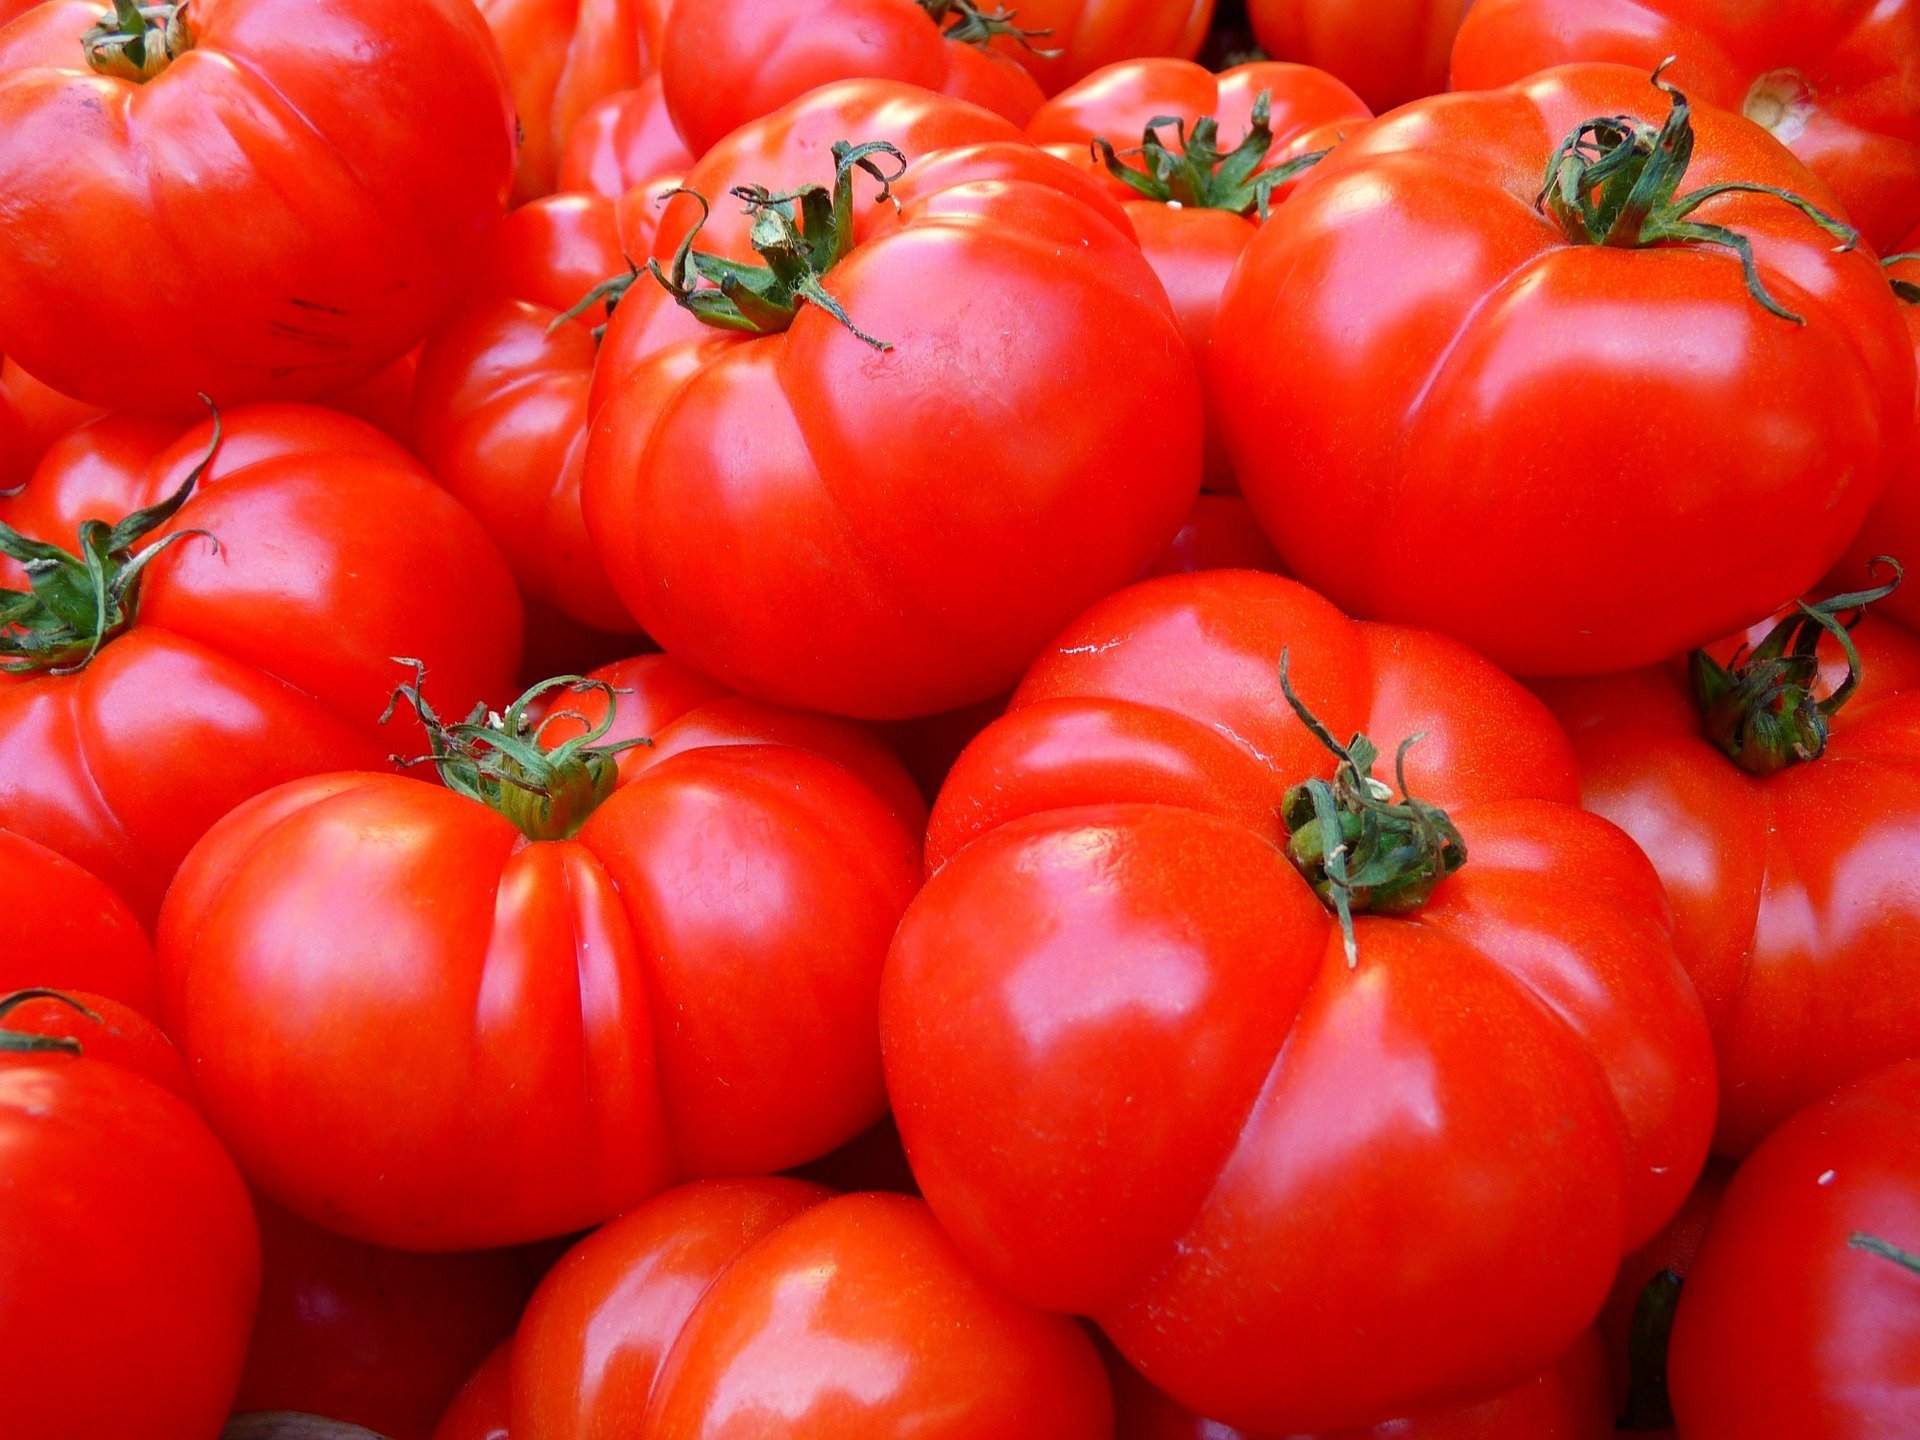 quiz z hiszpańskiego warzywa verdura test wiedzy łatwy tomate pomidor